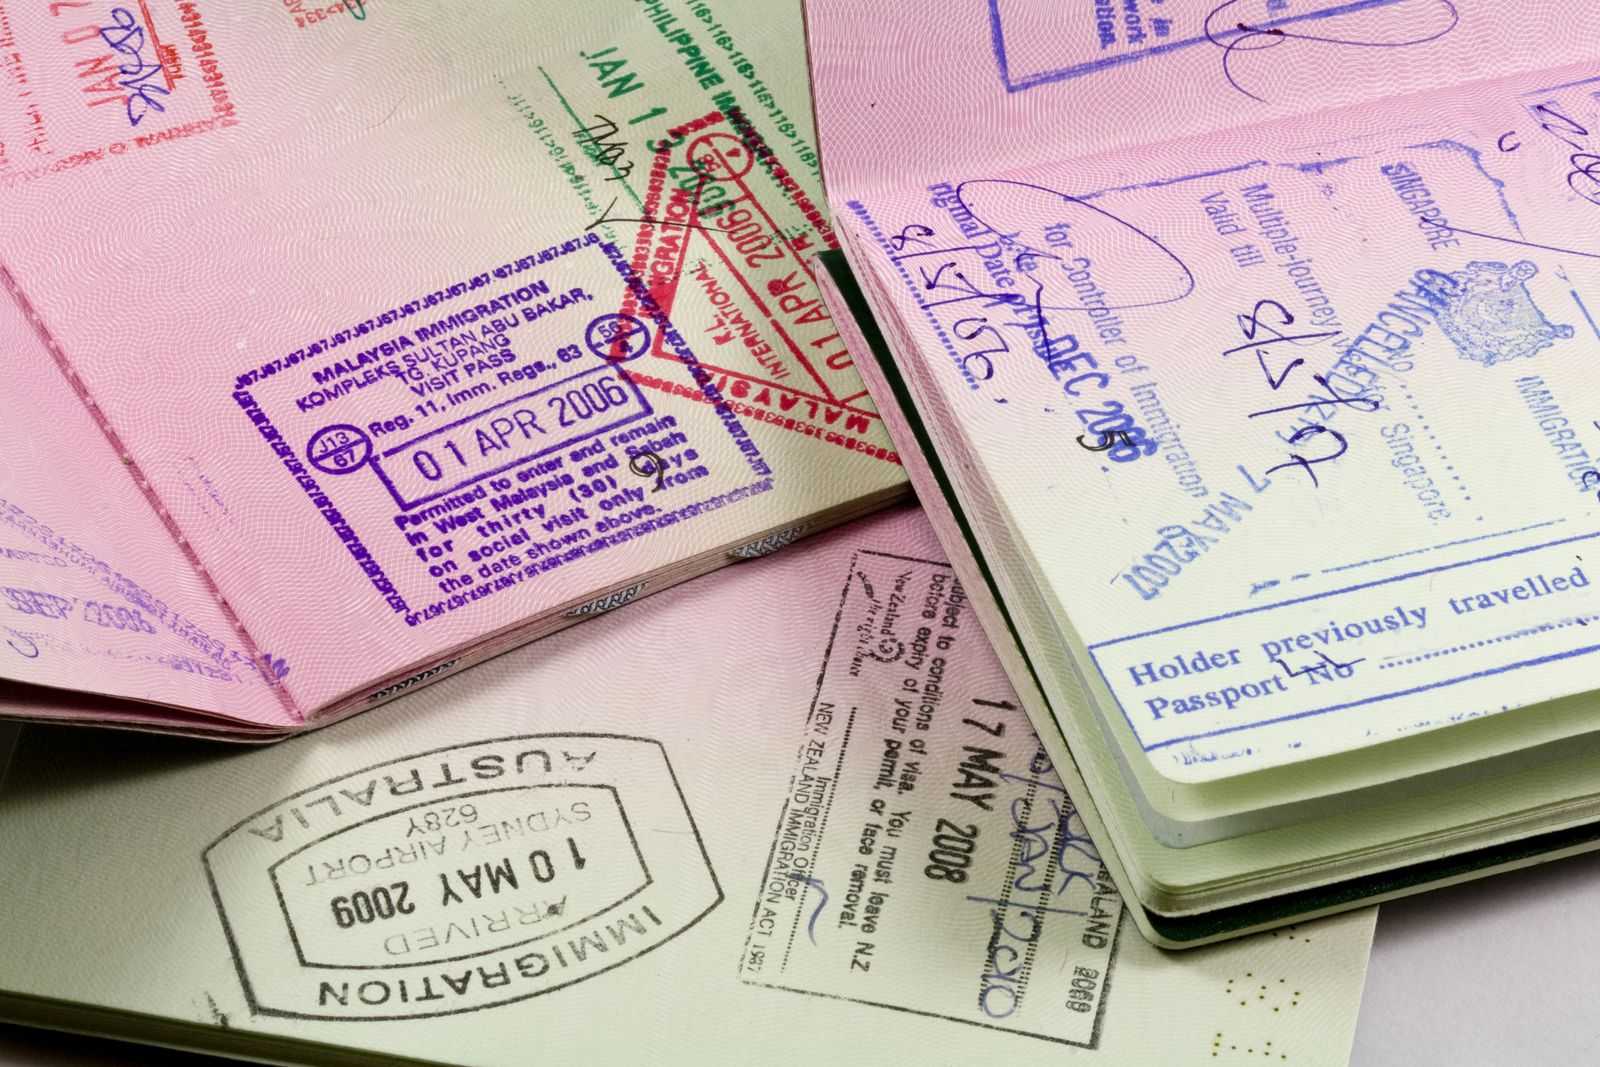 Digital Nomad Visas in numerous passports.